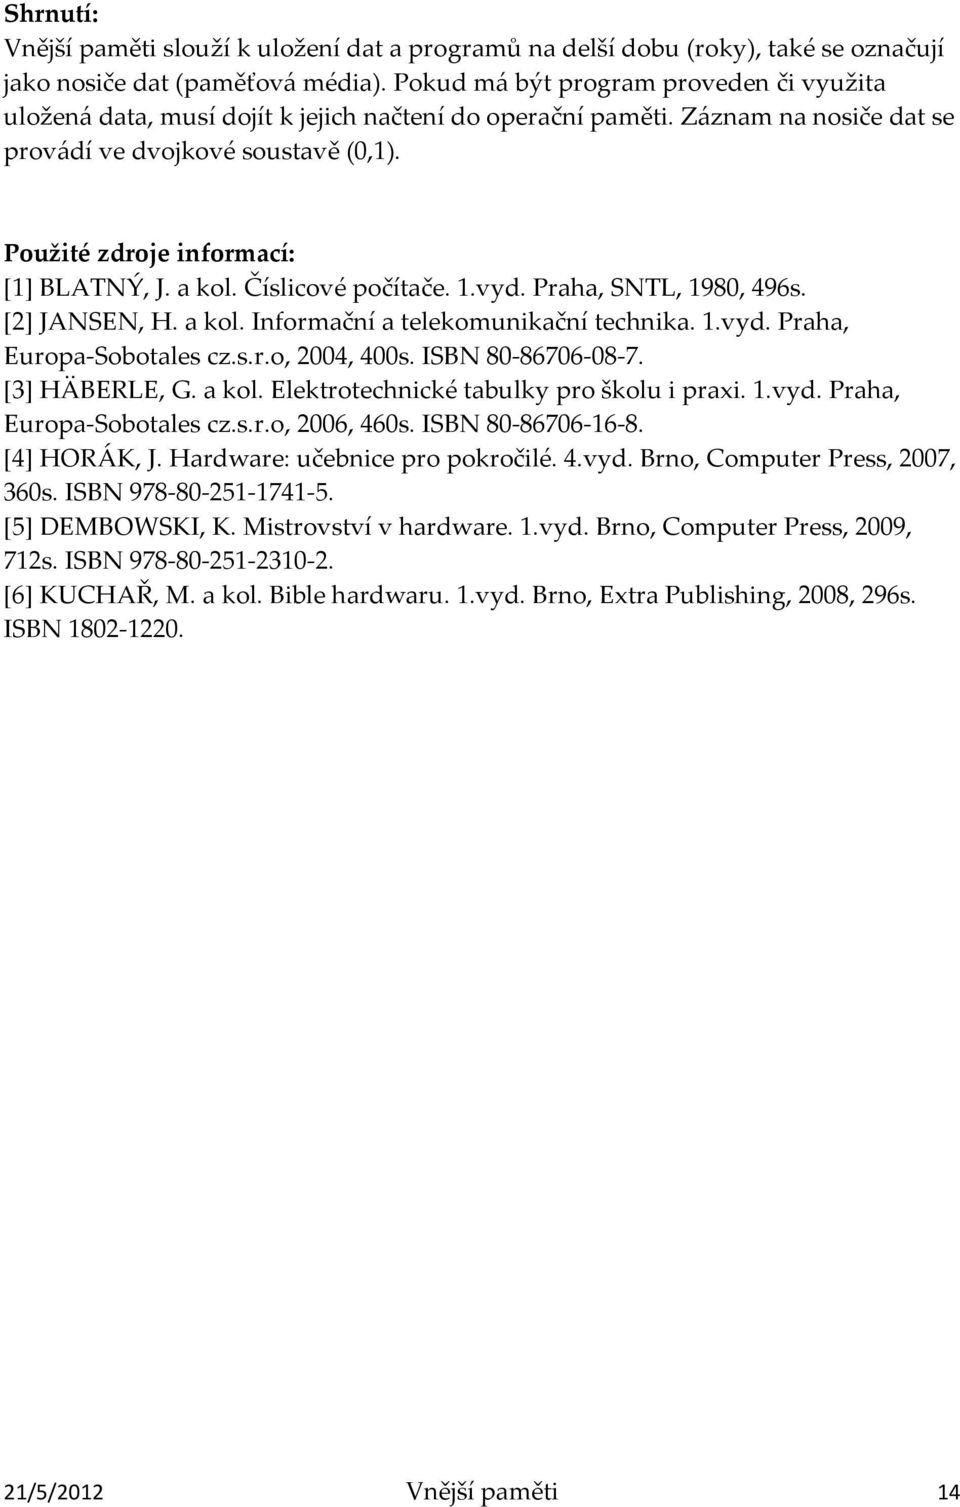 Použité zdroje informací: [1] BLATNÝ, J. a kol. Číslicové počítače. 1.vyd. Praha, SNTL, 1980, 496s. [2] JANSEN, H. a kol. Informační a telekomunikační technika. 1.vyd. Praha, Europa-Sobotales cz.s.r.o, 2004, 400s.